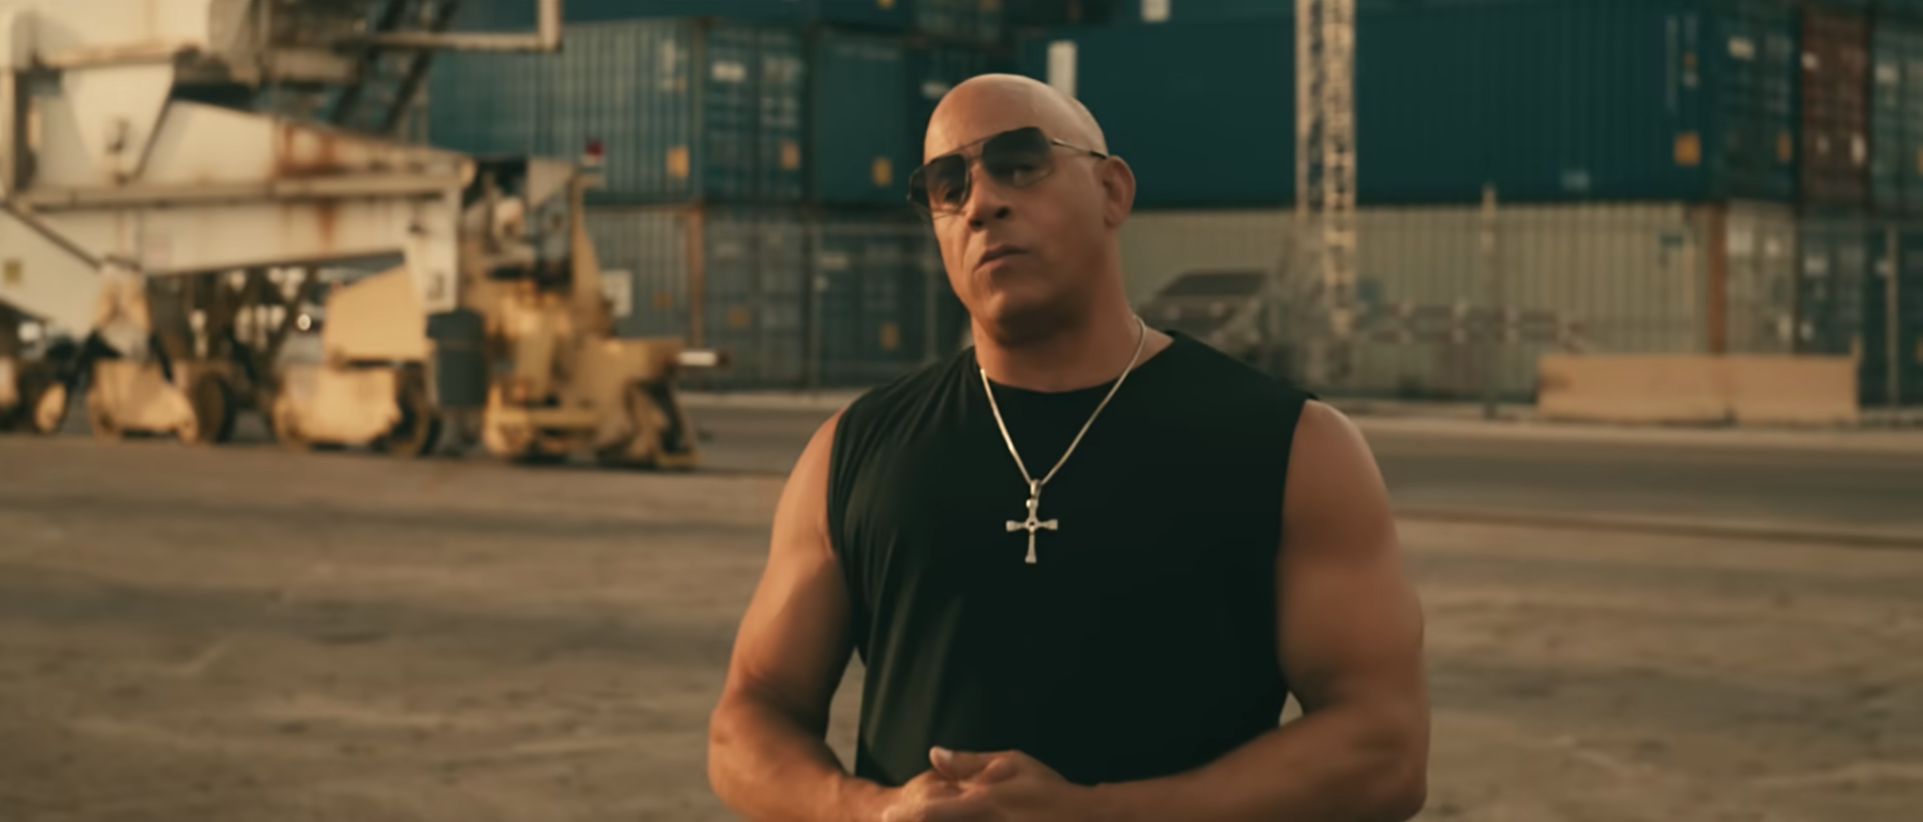 $!El actor Vin Diesel aparece en el video.